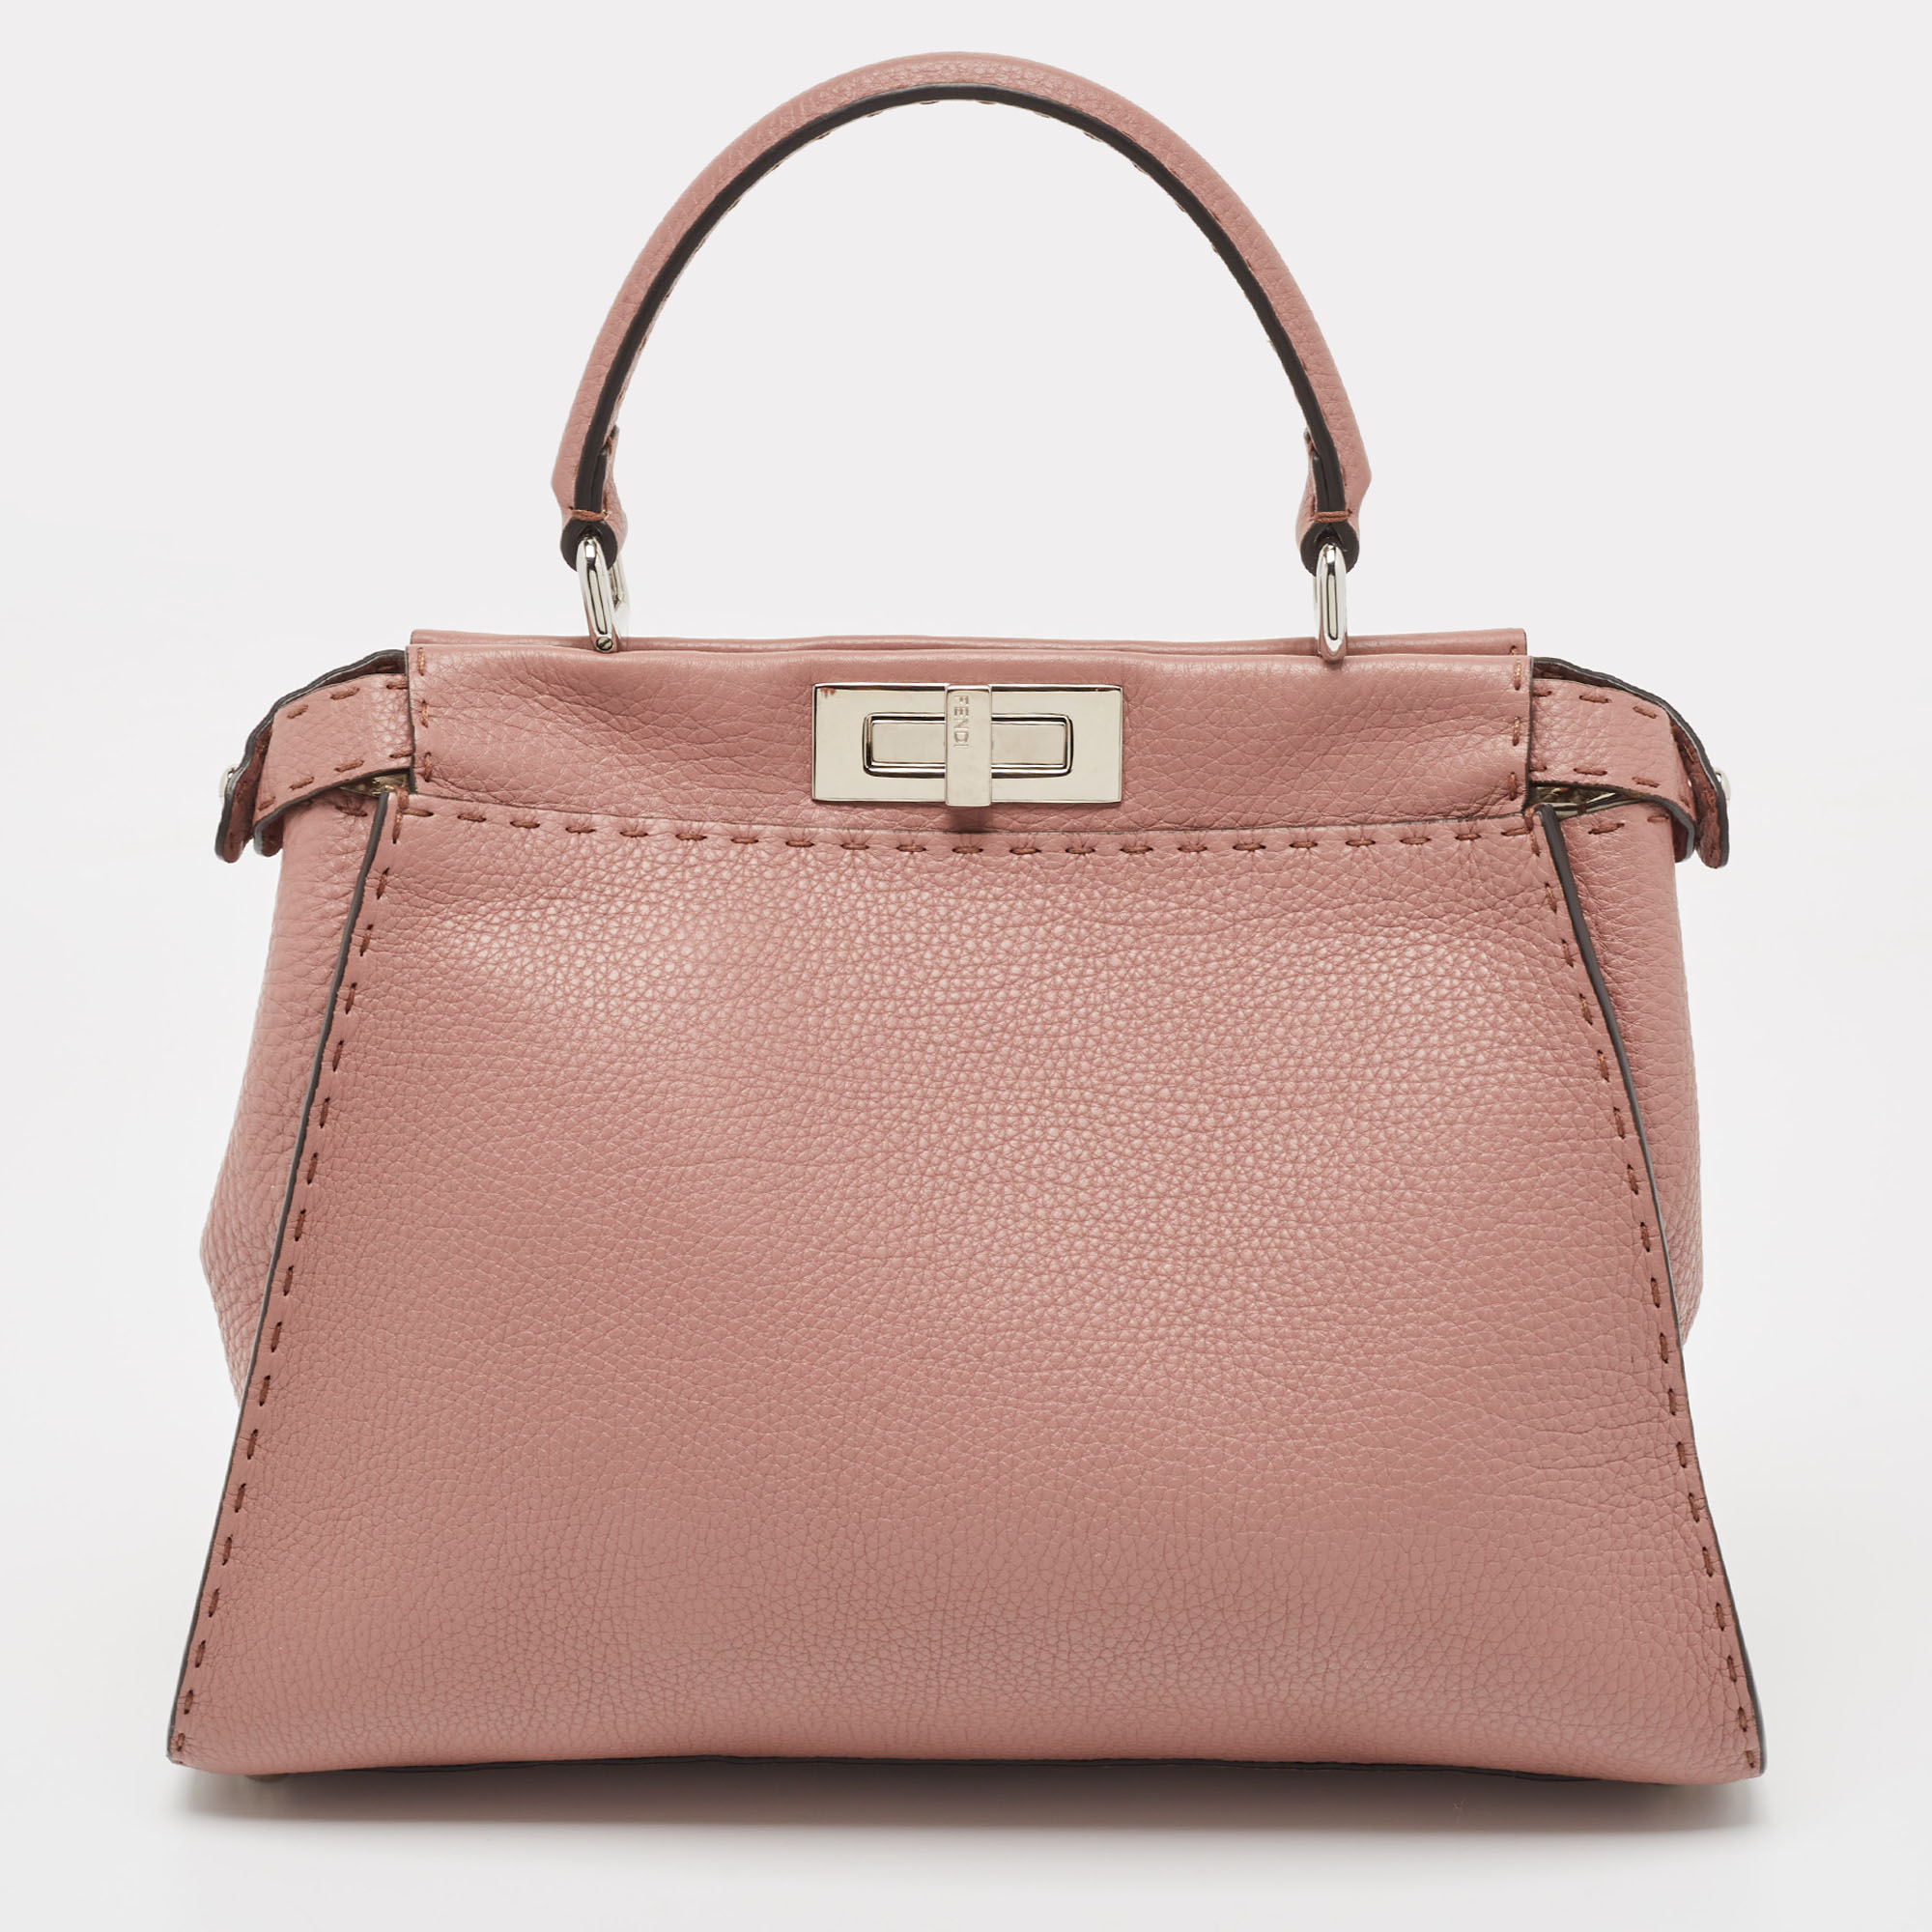 Fendi Old Rose Leather Medium Peekaboo Top Handle Bag